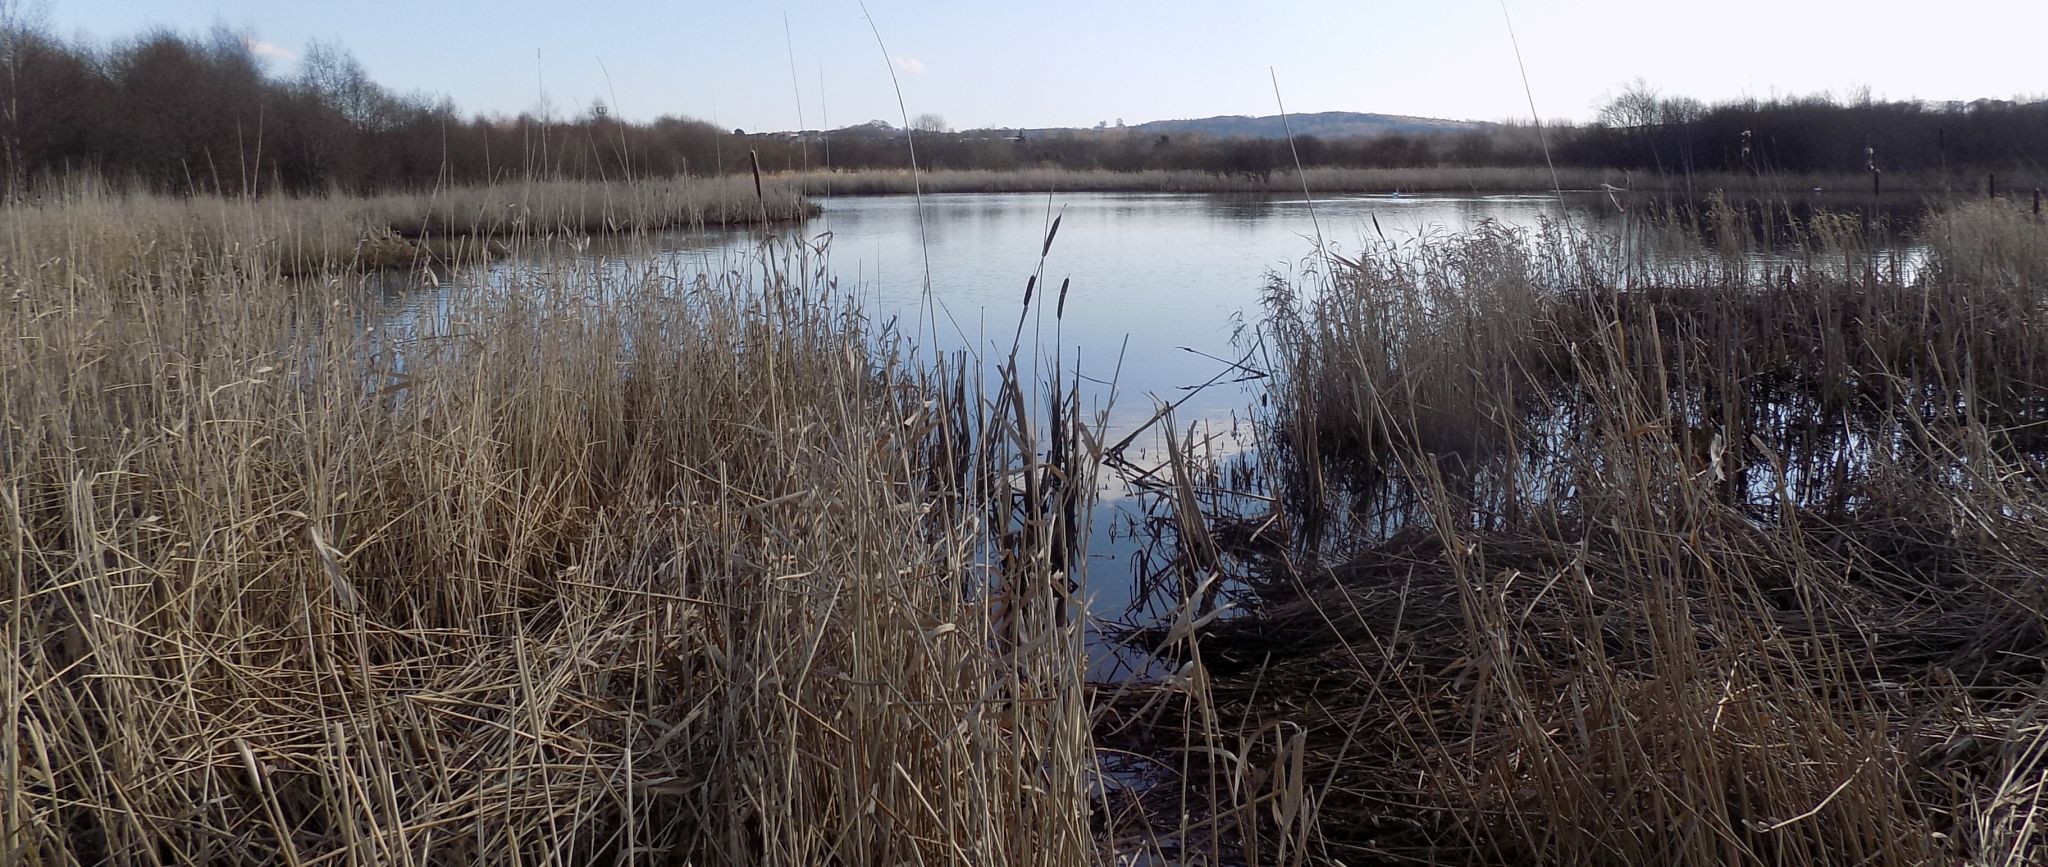 Pond at Dumbreck Marsh